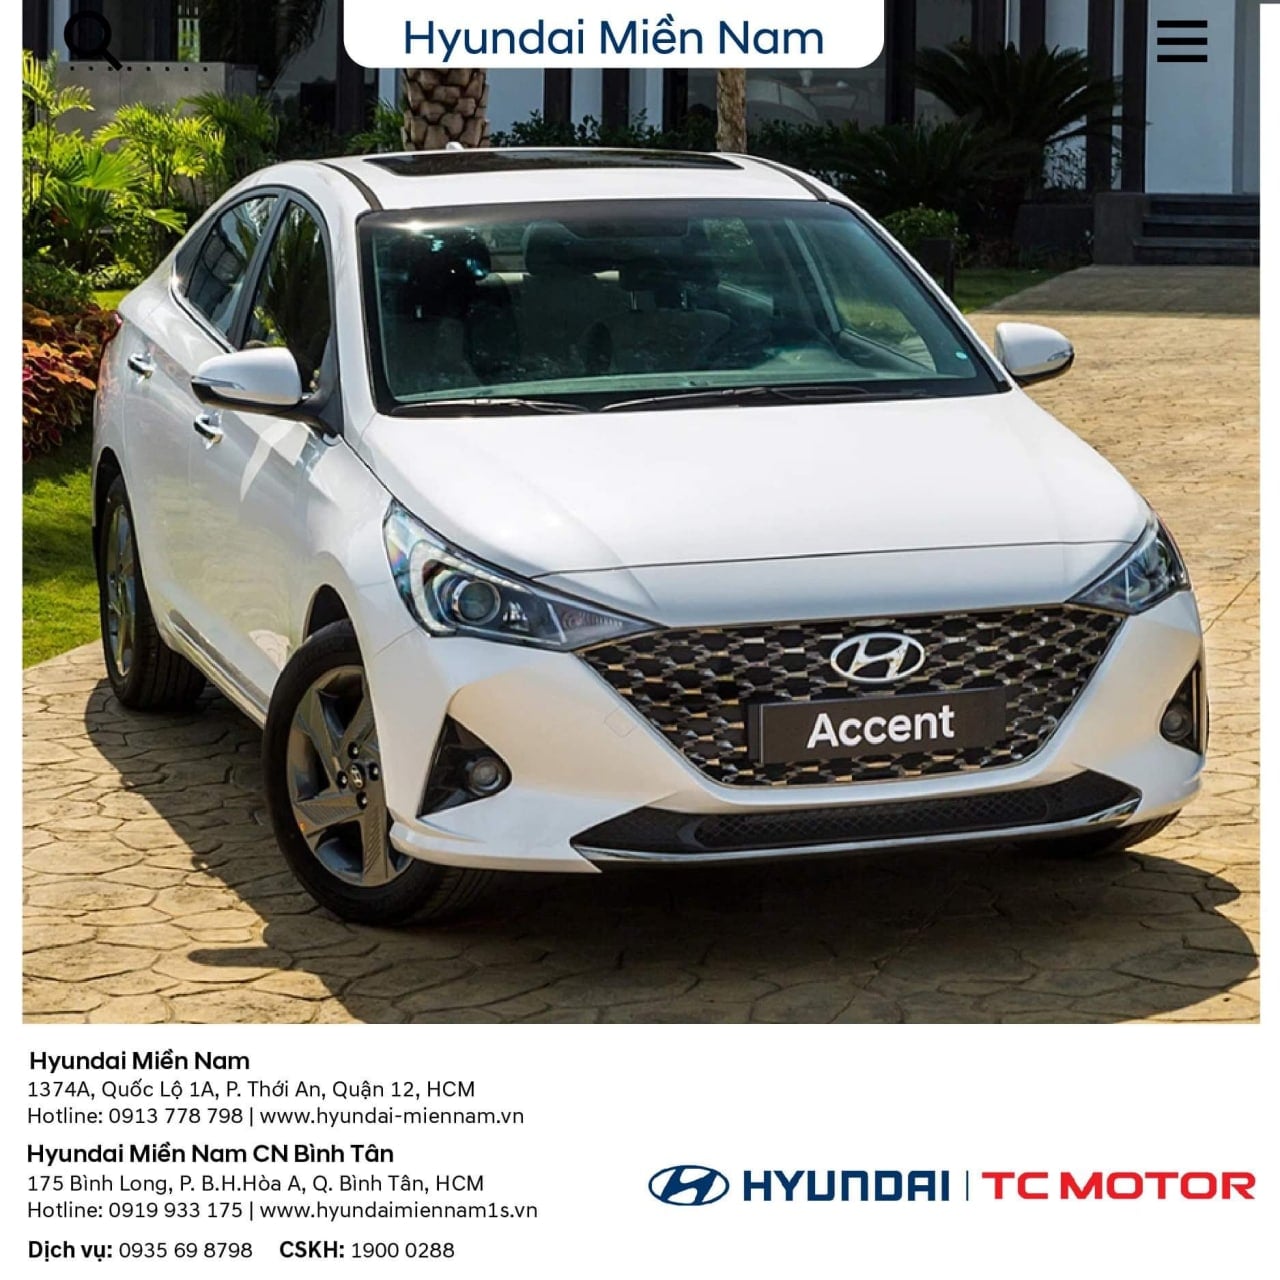 Hyundai Accent top bán hàng tháng 04